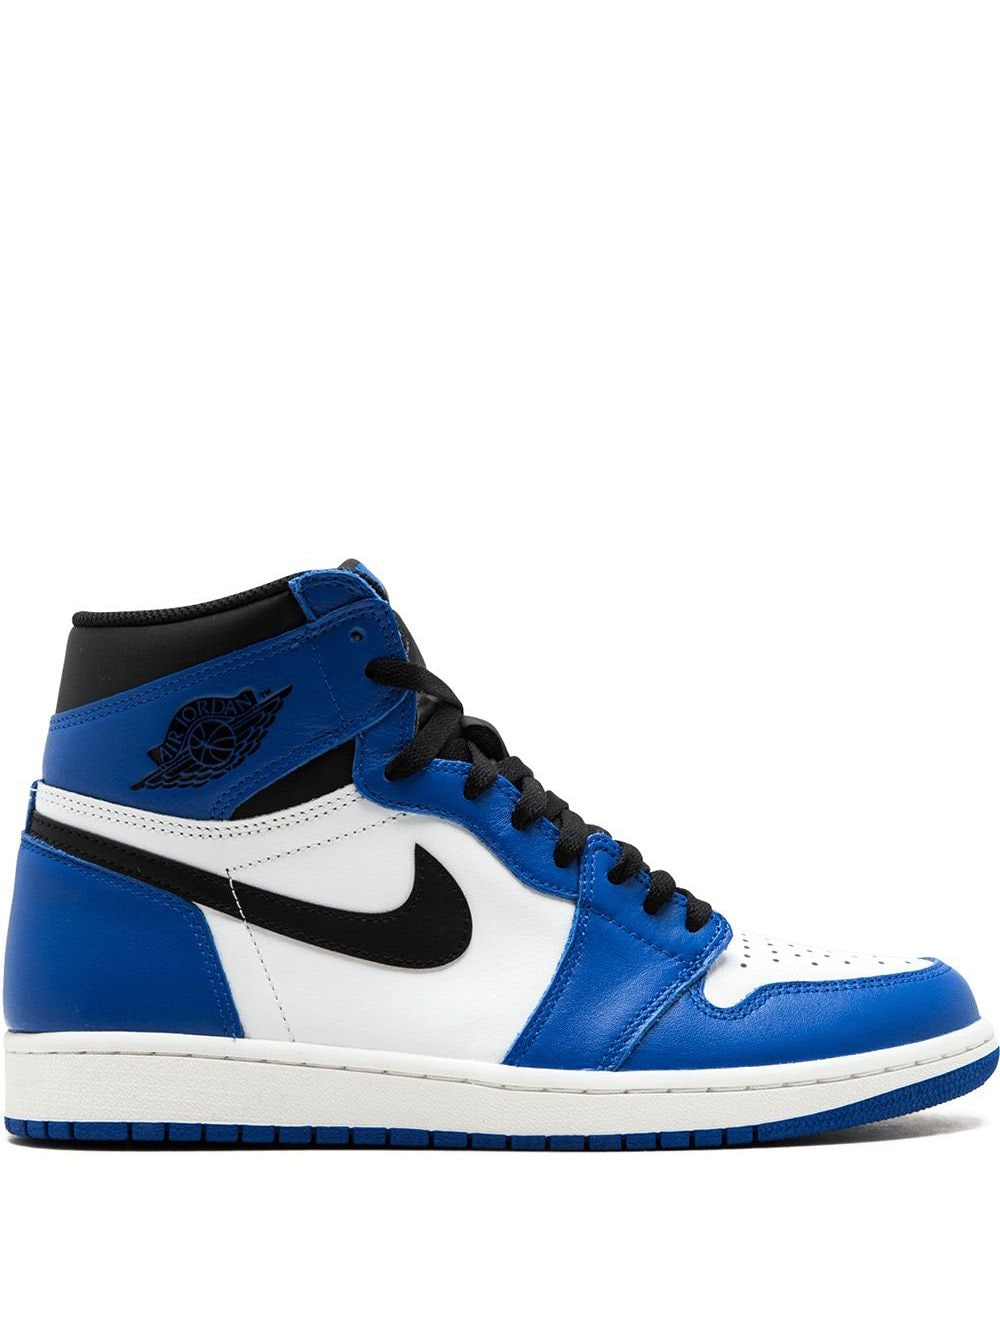 Jordan Air Jordan 1 Retro High OG "Game Royal" sneakers - Blue